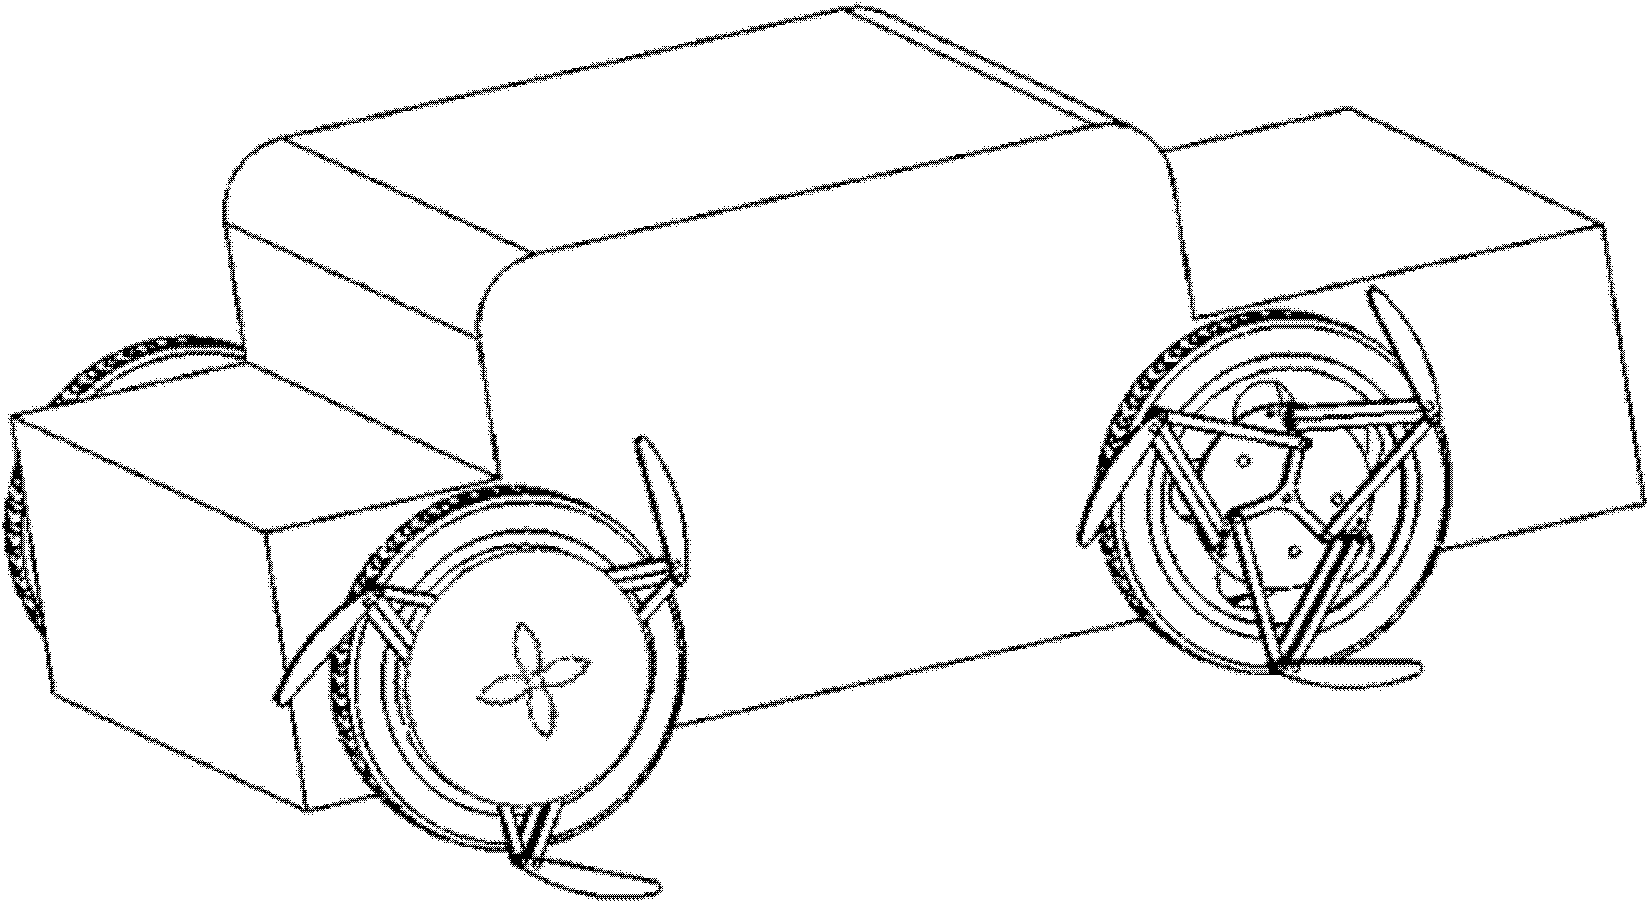 Cross-country vehicle wheel